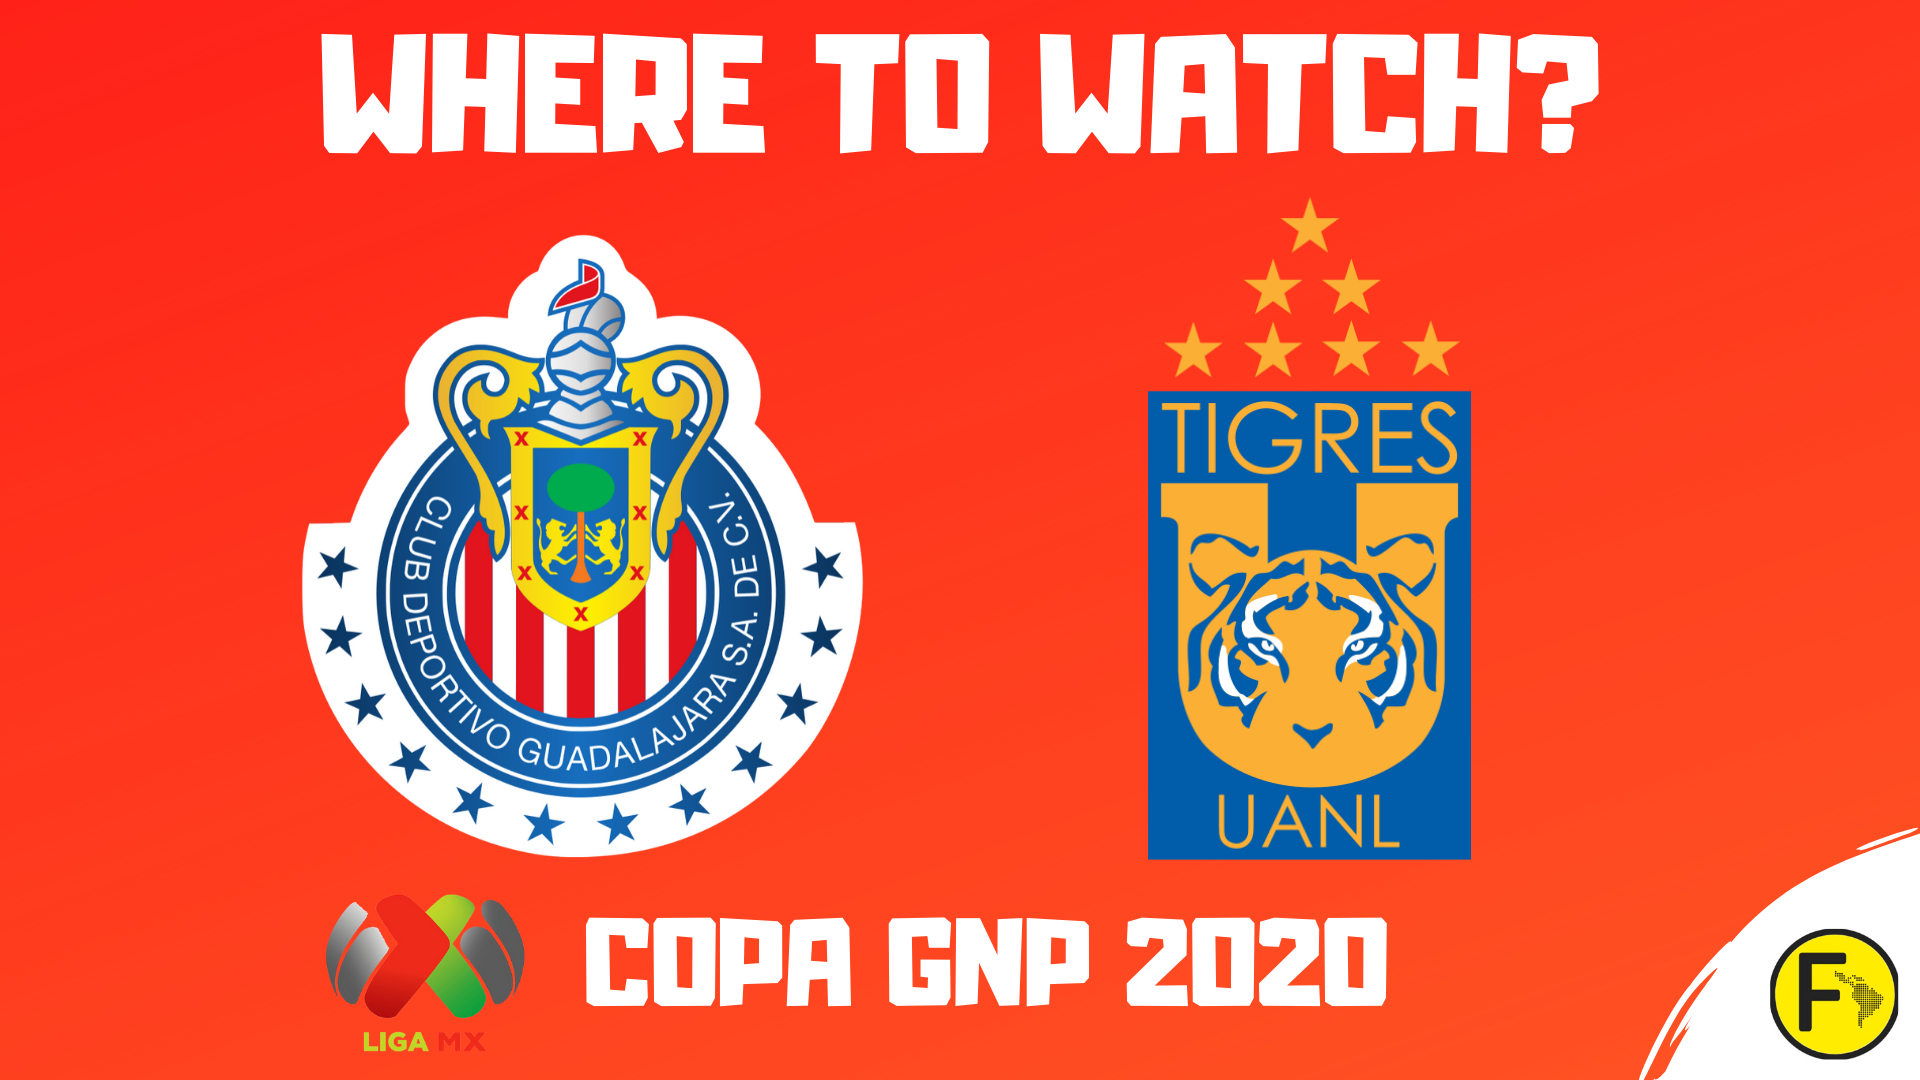 Chivas Vs Tigres Uanl How To Watch Online Chivas Tv 2020 Stream Info Futnsoccer